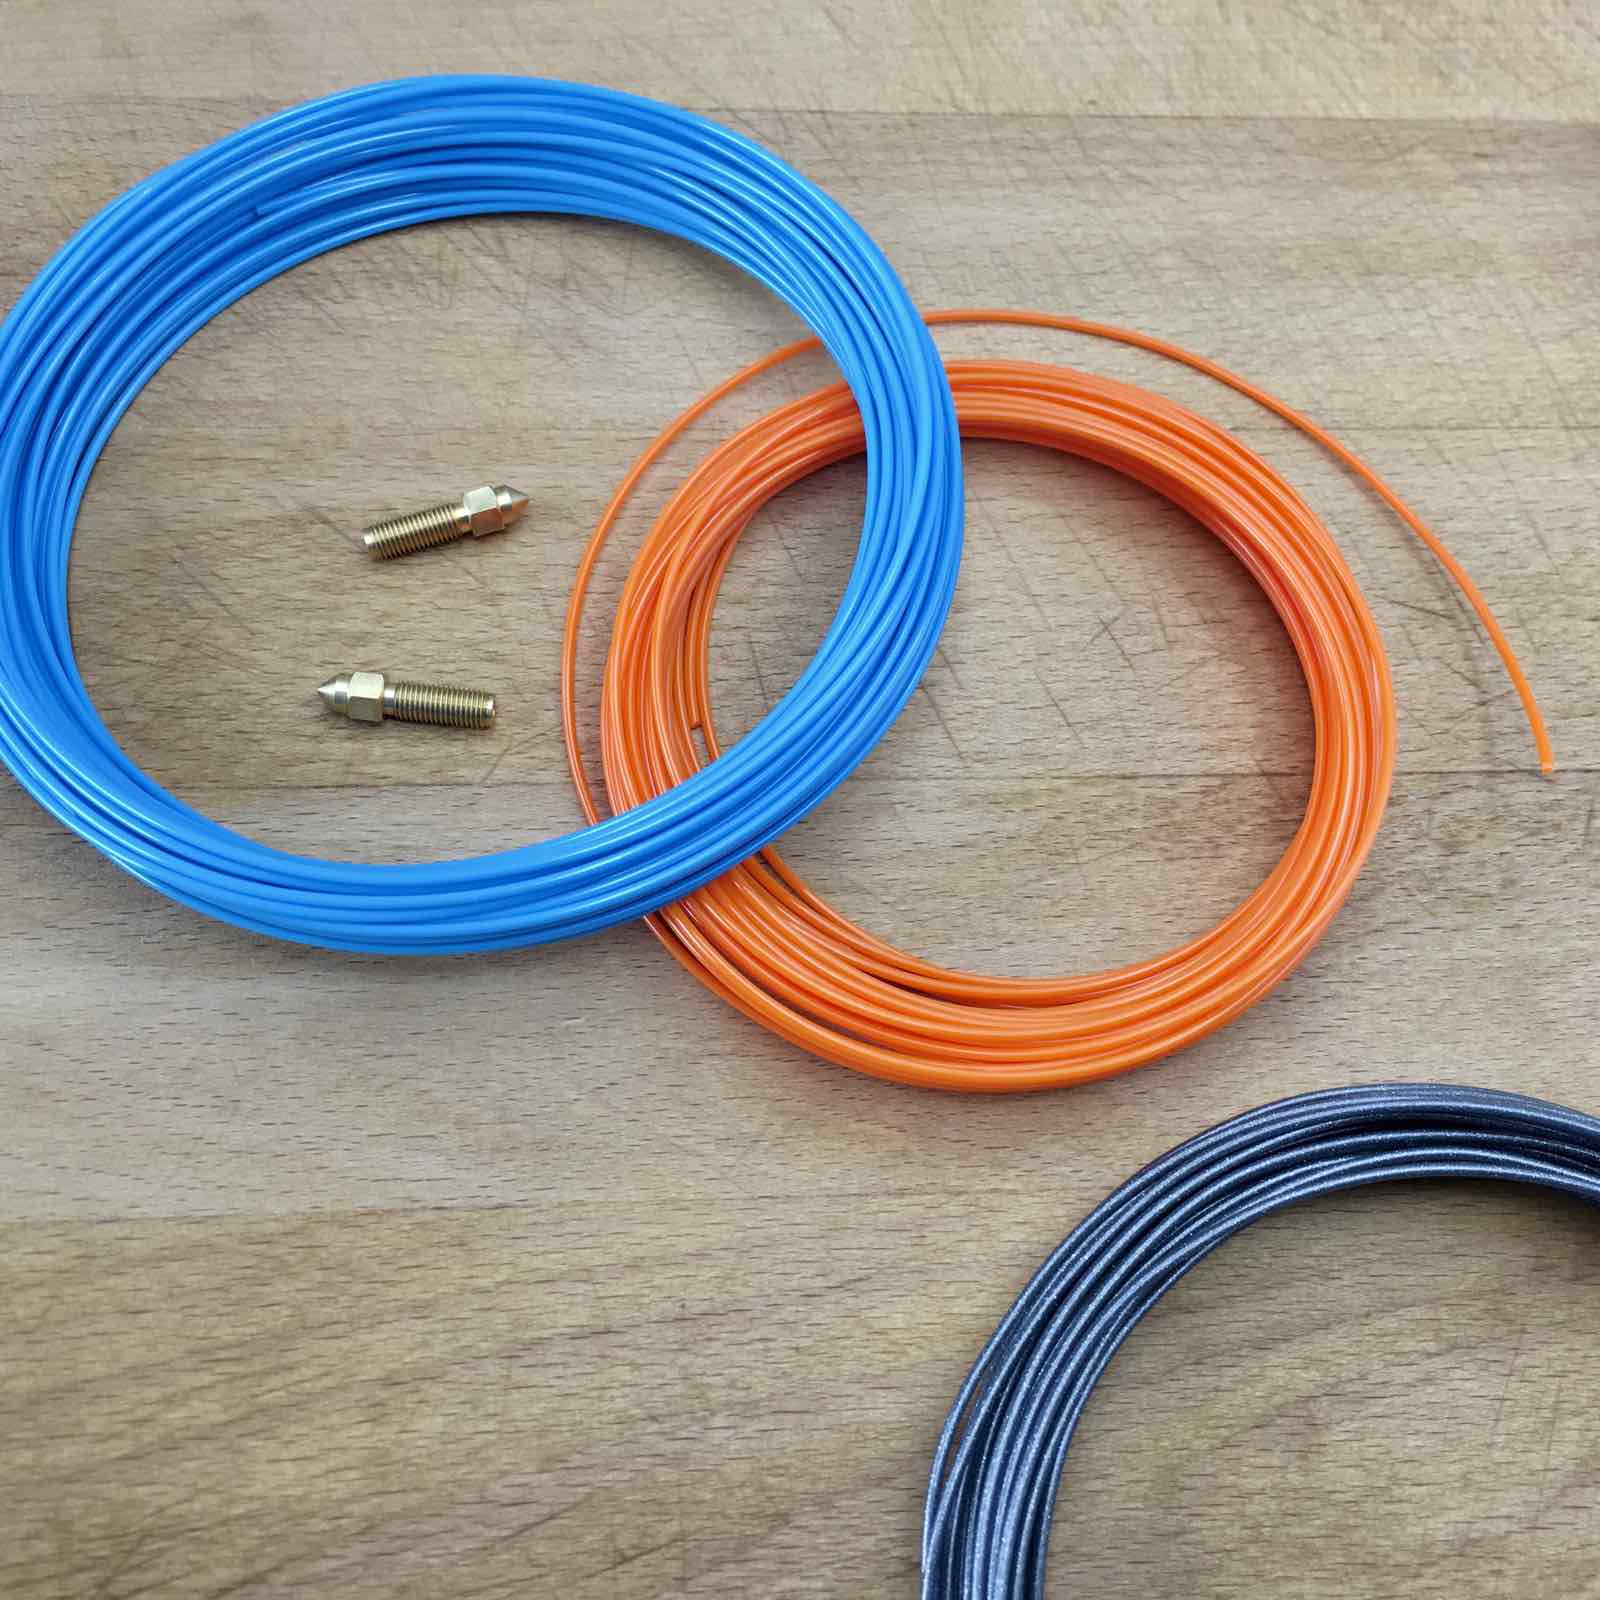 Fiberlogy EASY PETG 3D Printer Filament Samples BLUE ORANGE VERTIGO